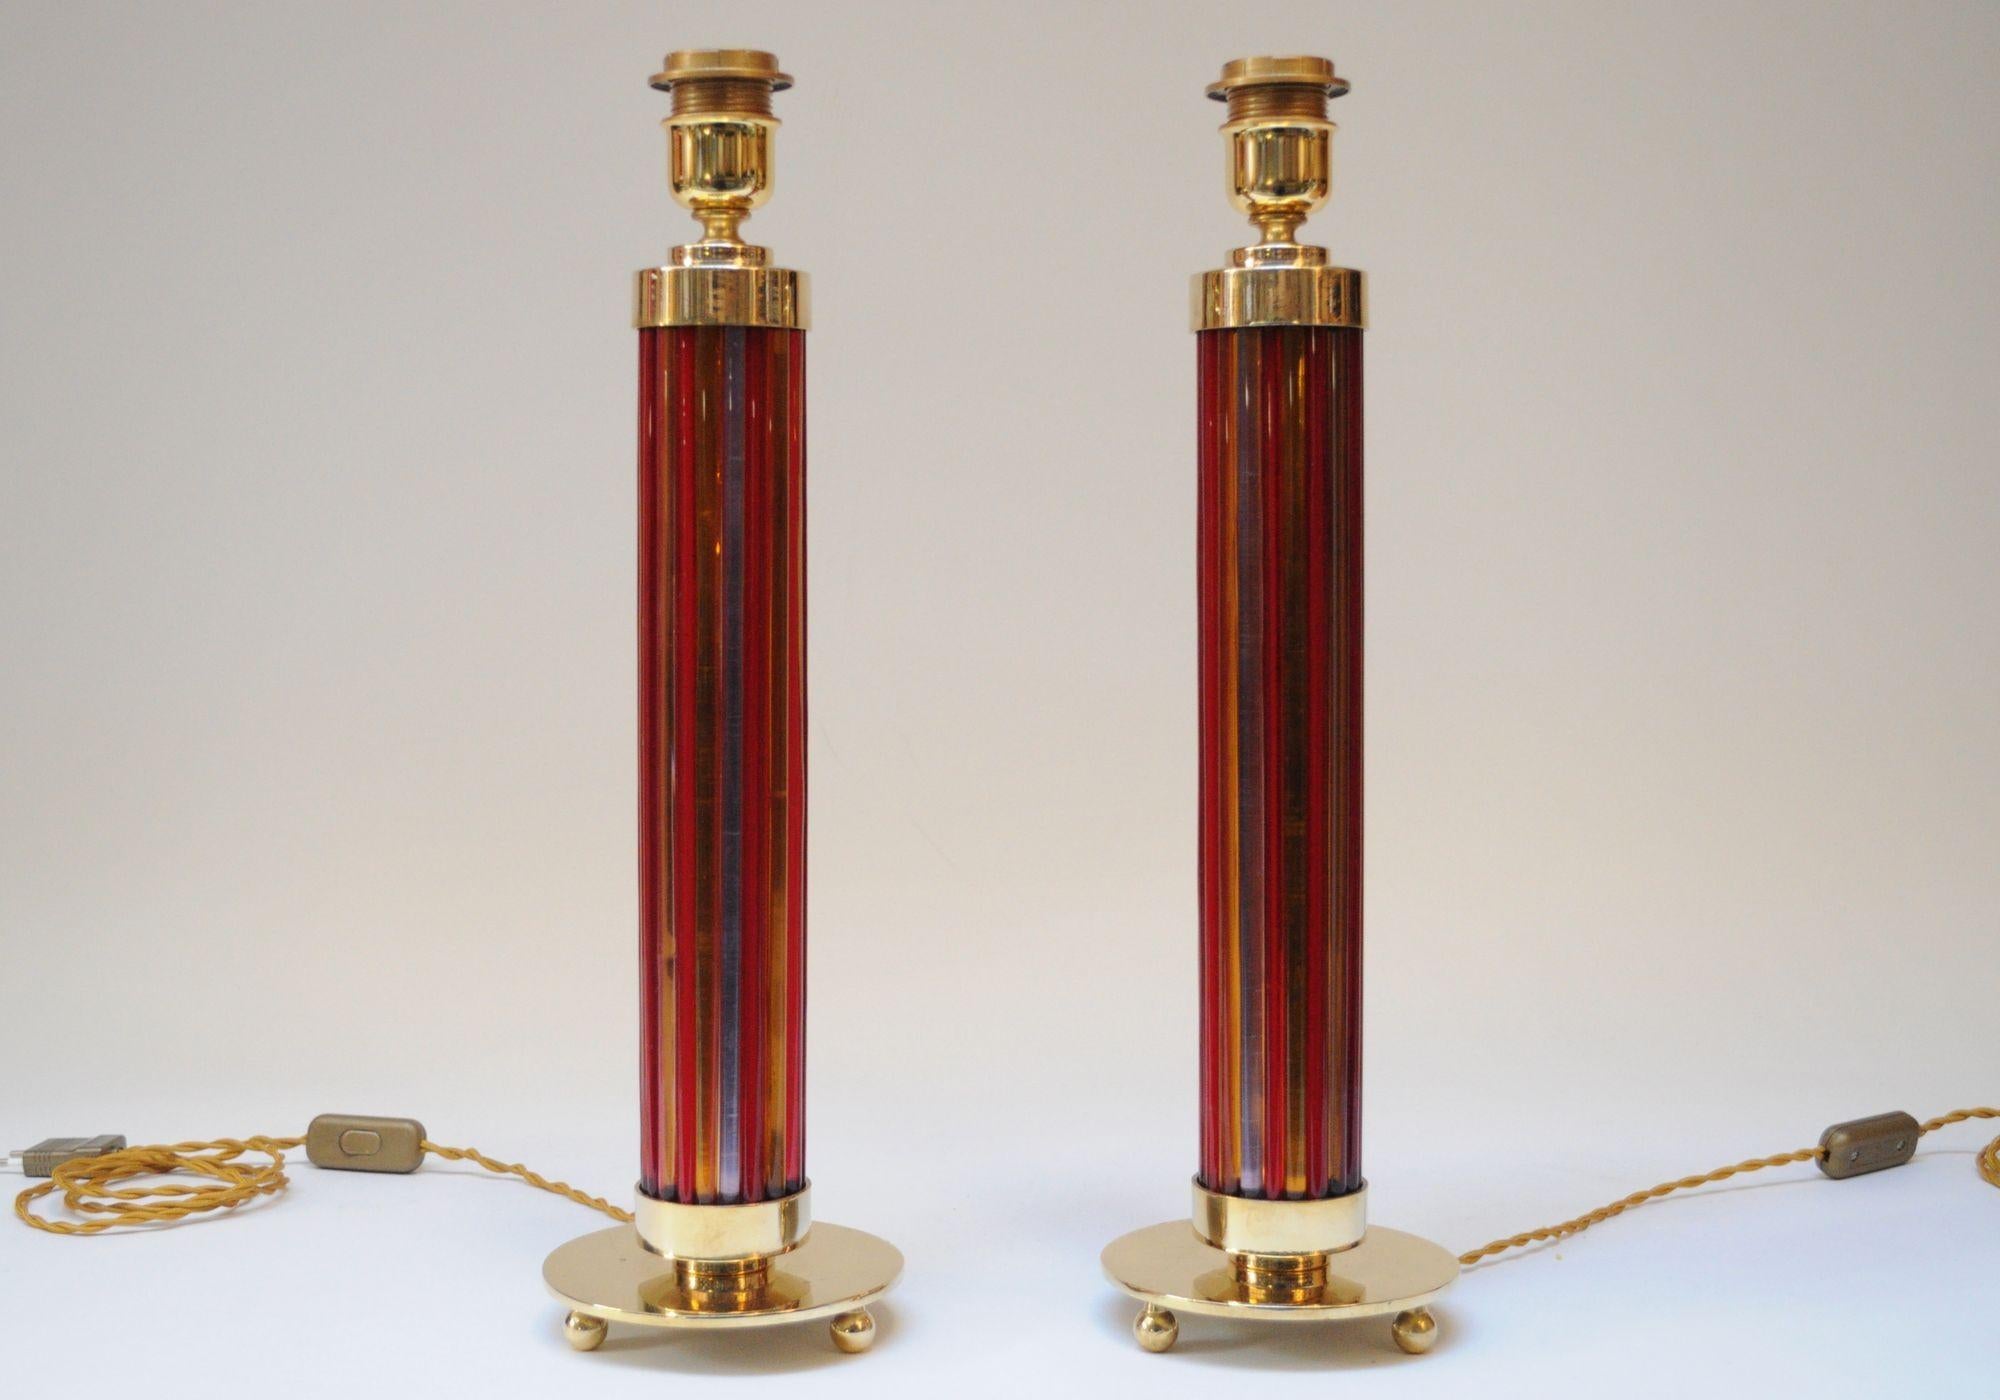 Lampe de table colorée et élégante de Murano (vers les années 1950, Italie).
Composée de piliers individuels en verre de Murano de couleur orange, rouge et violette formant des colonnes, soutenus en haut et en bas par des capuchons en laiton et une